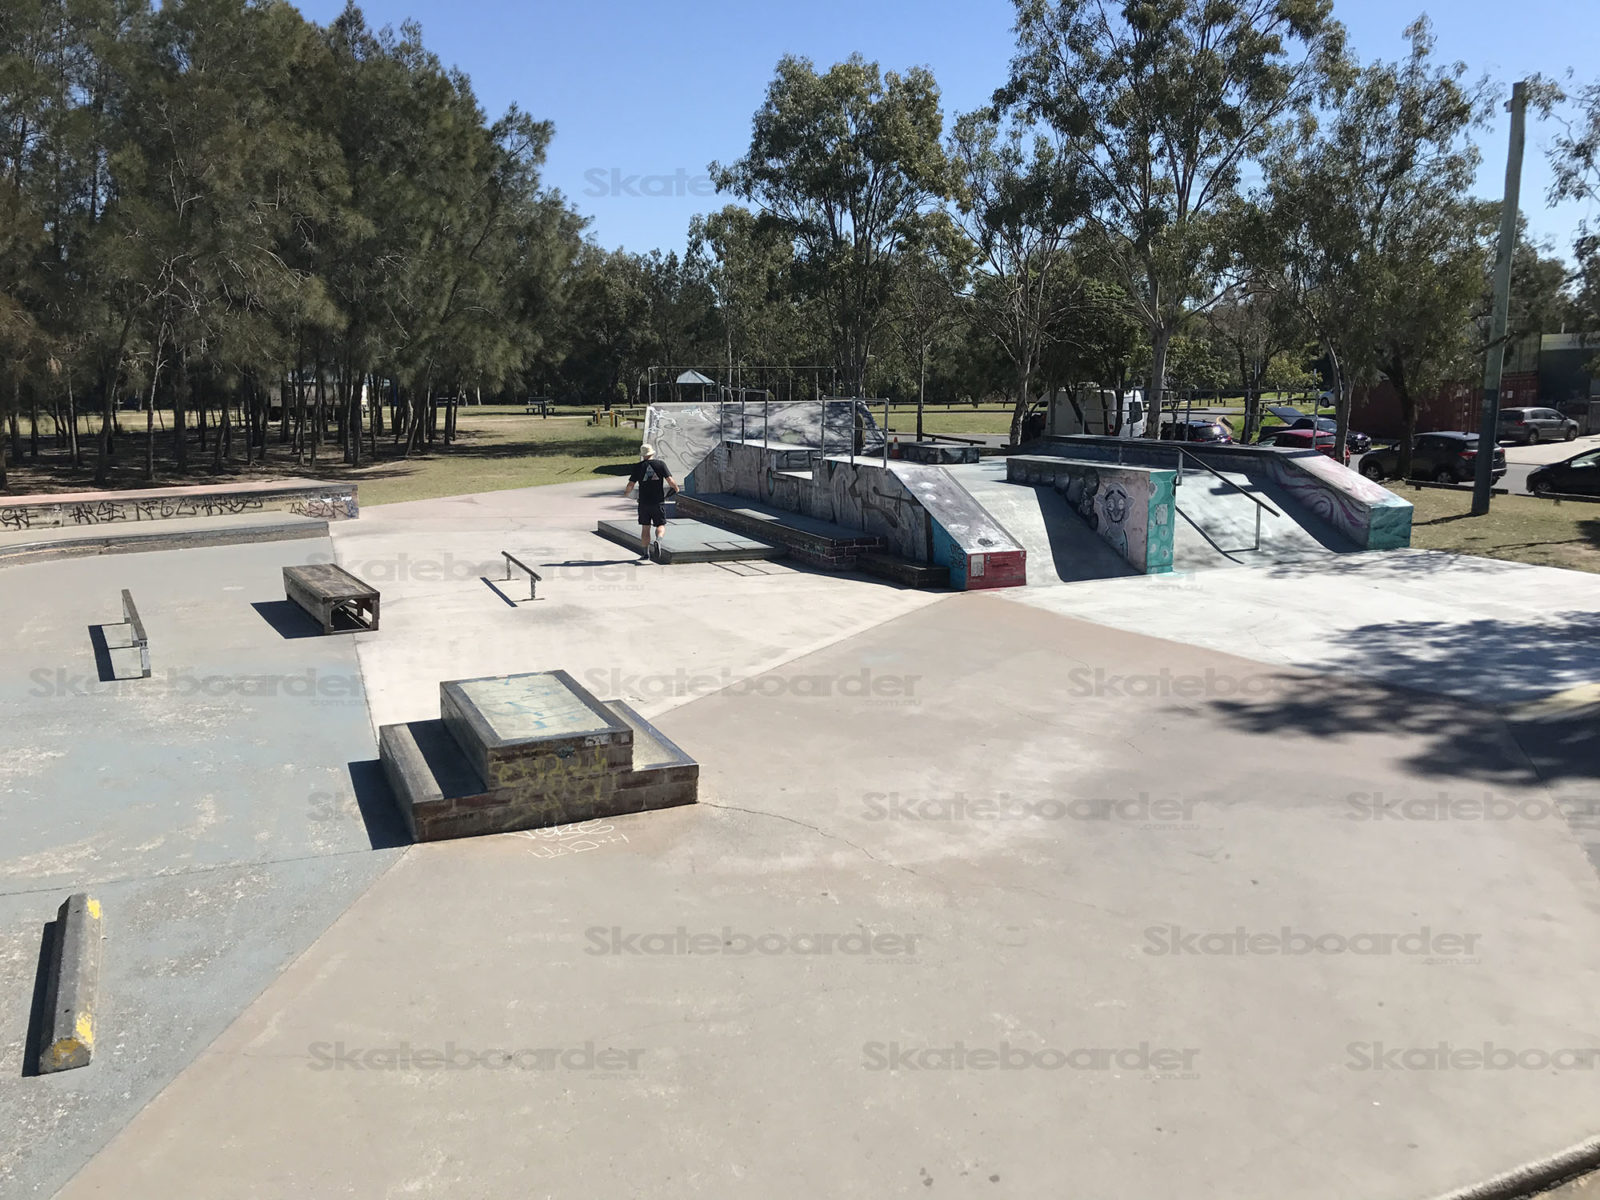 Coorparoo Skatepark